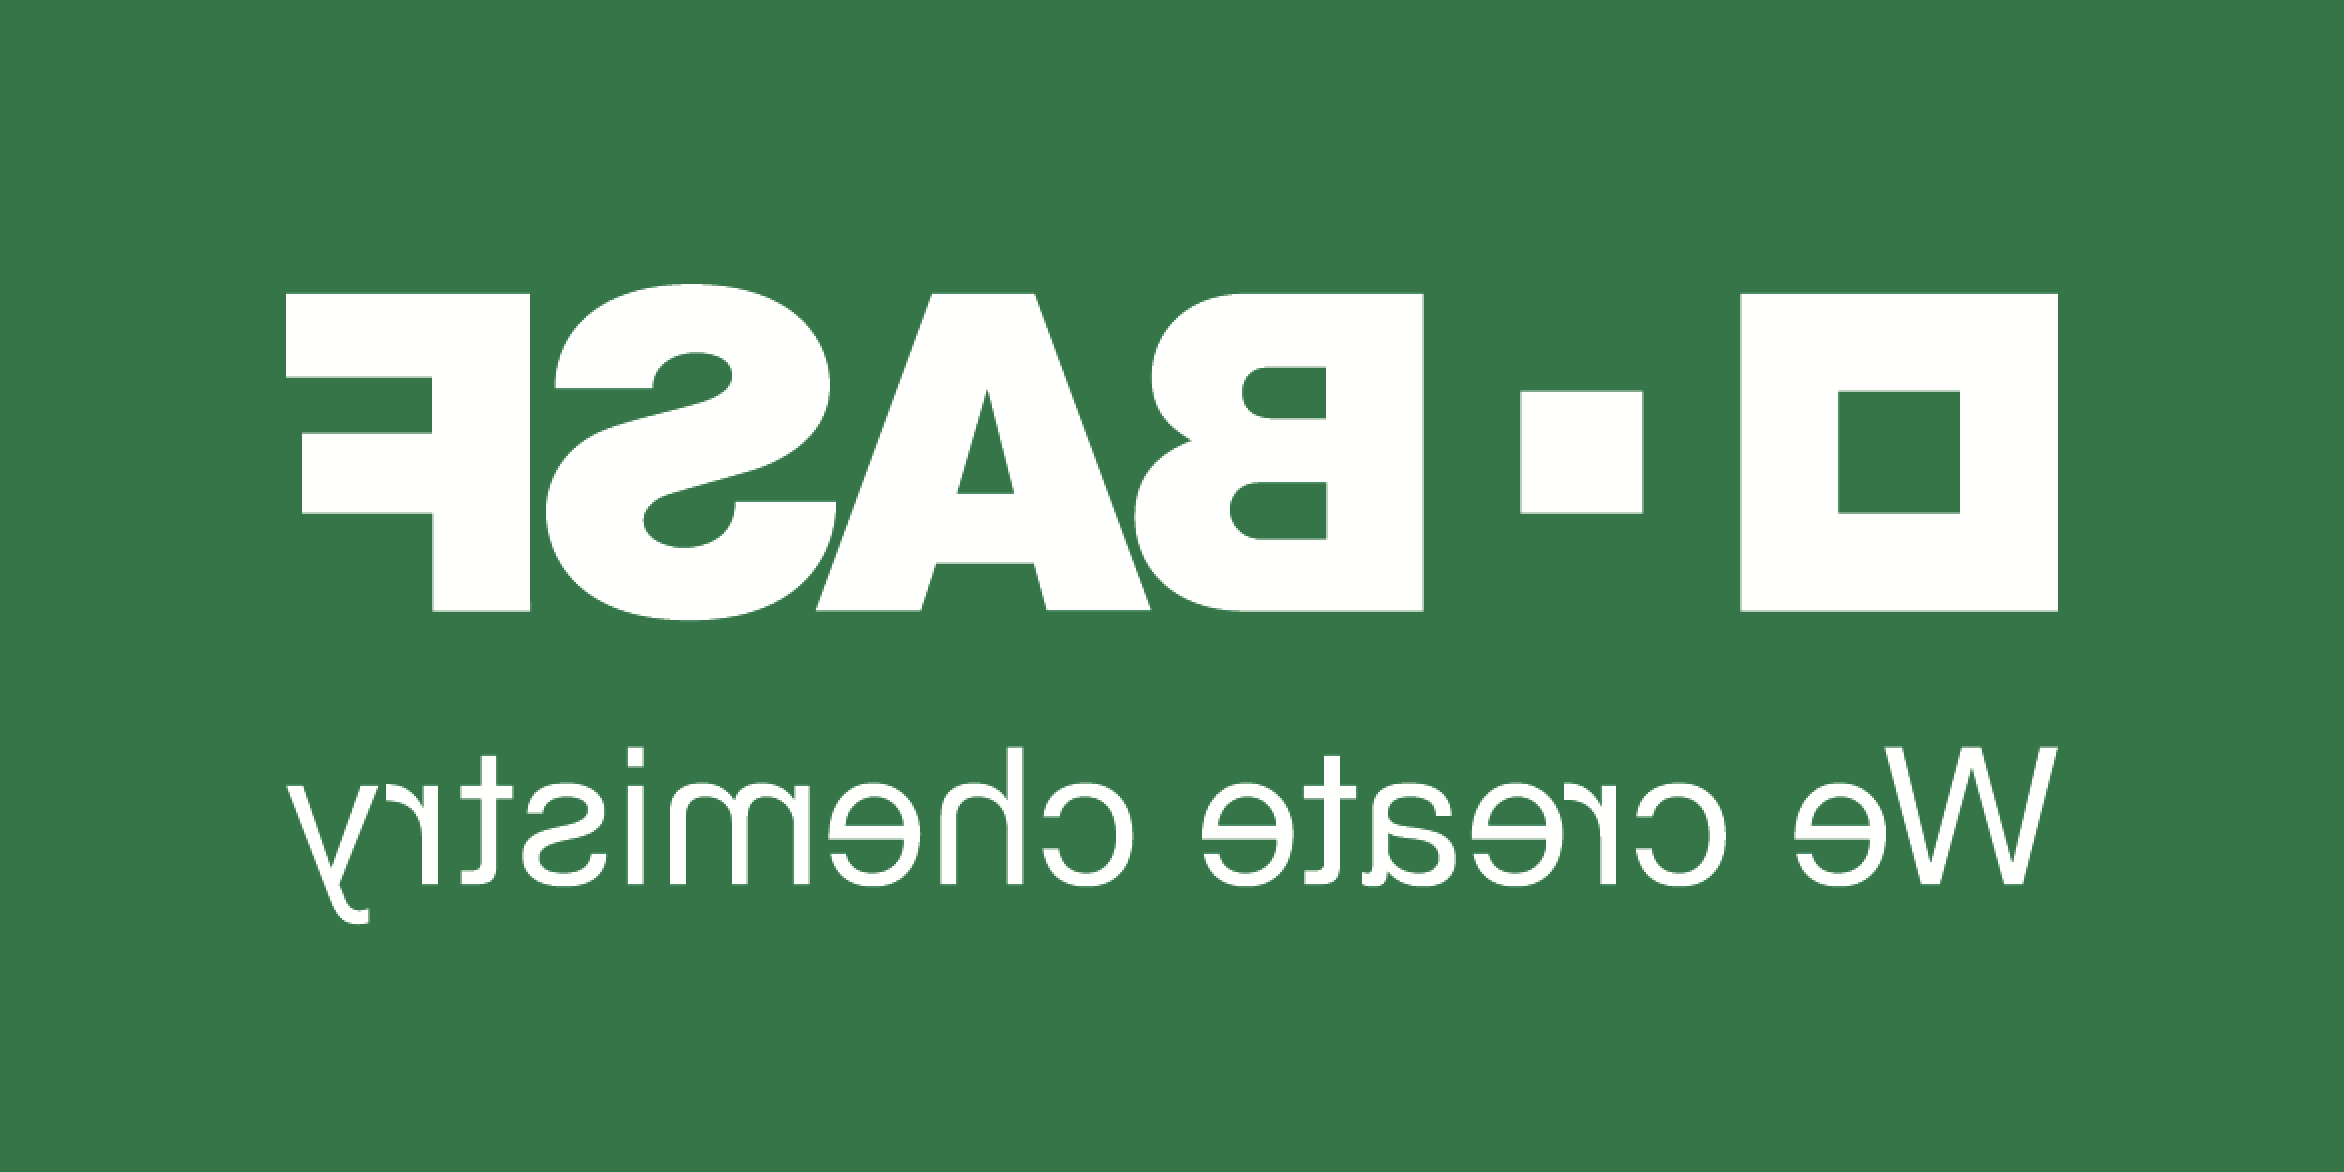 巴斯夫绿色标志